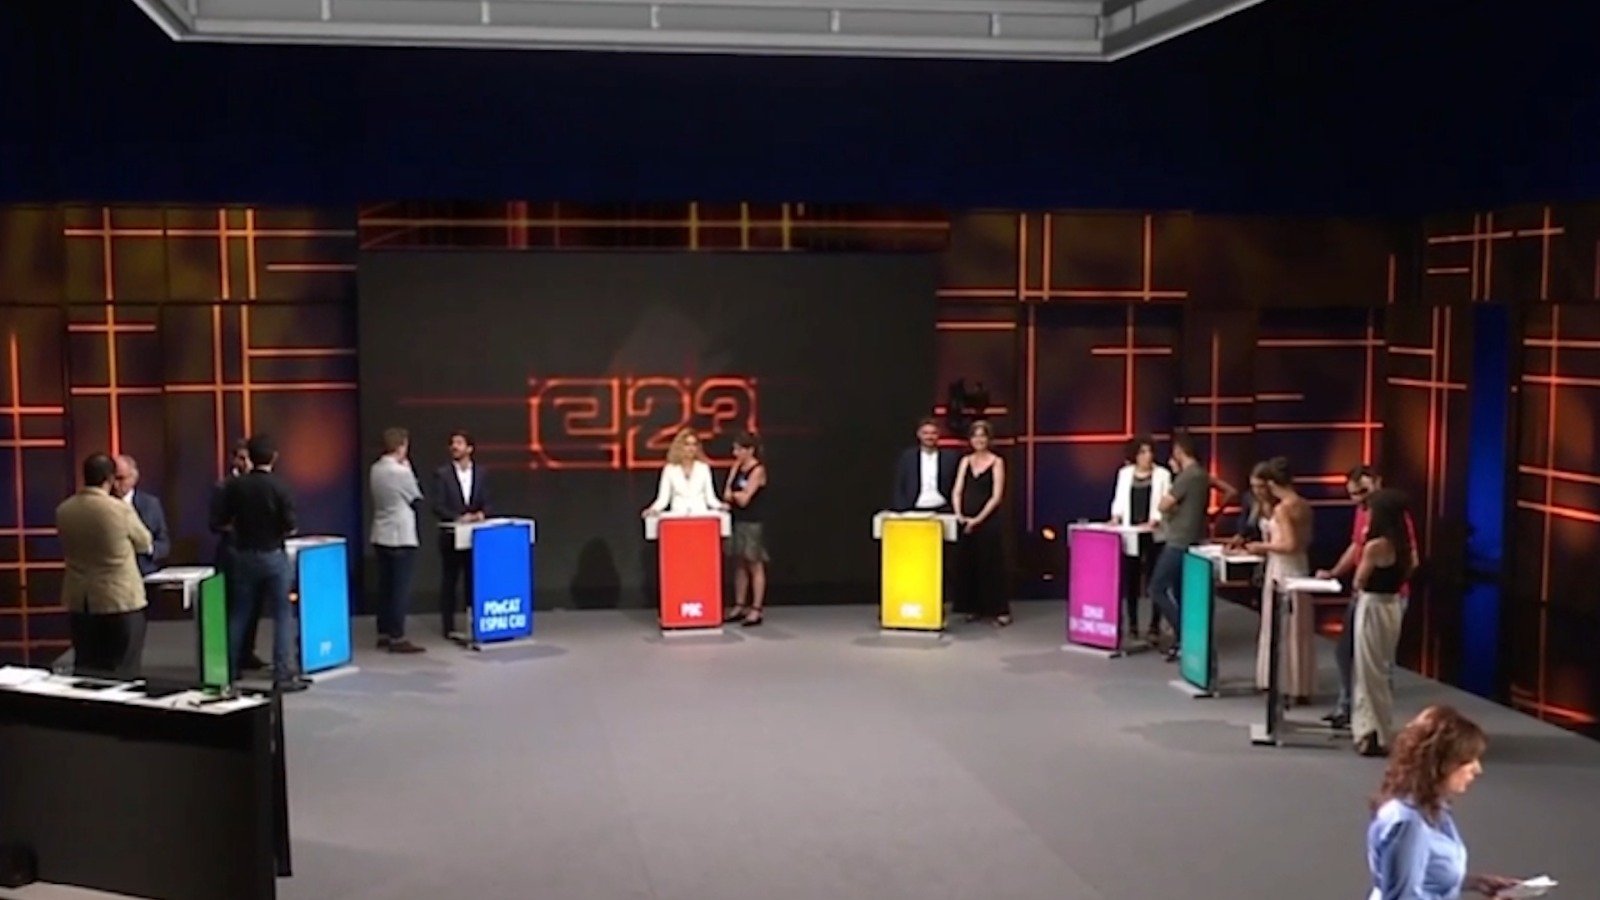 Creus que TV3 hauria de fer el debat electoral del 12-M a Perpinyà?